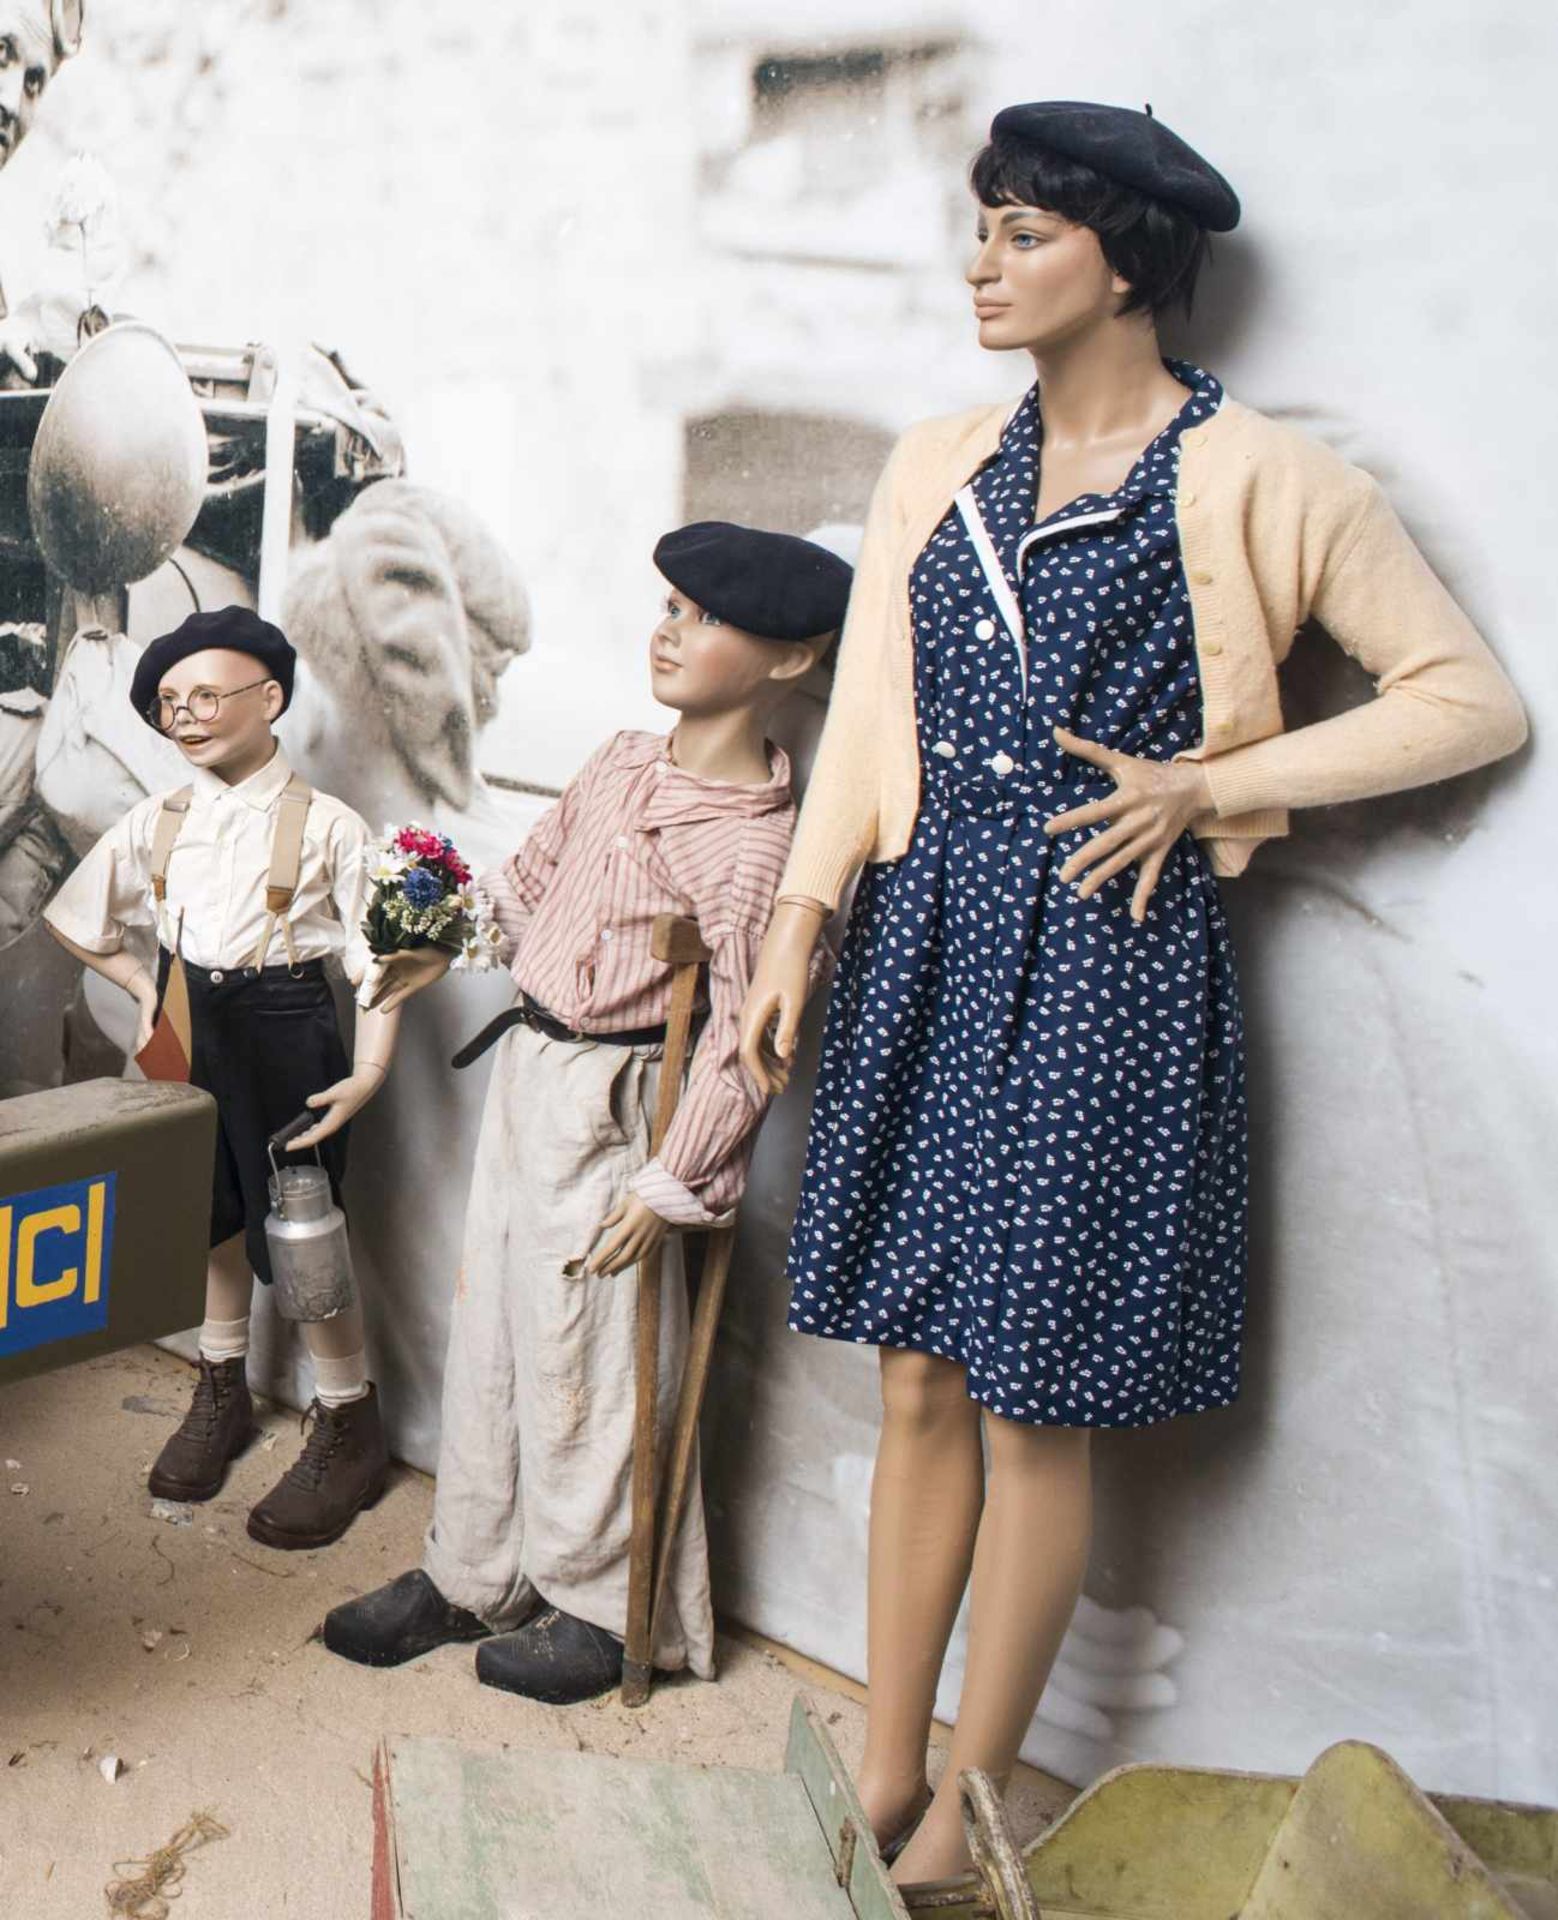 Deux mannequins complets représentant une femme portant un béret et sa robe bleue et dun garçon